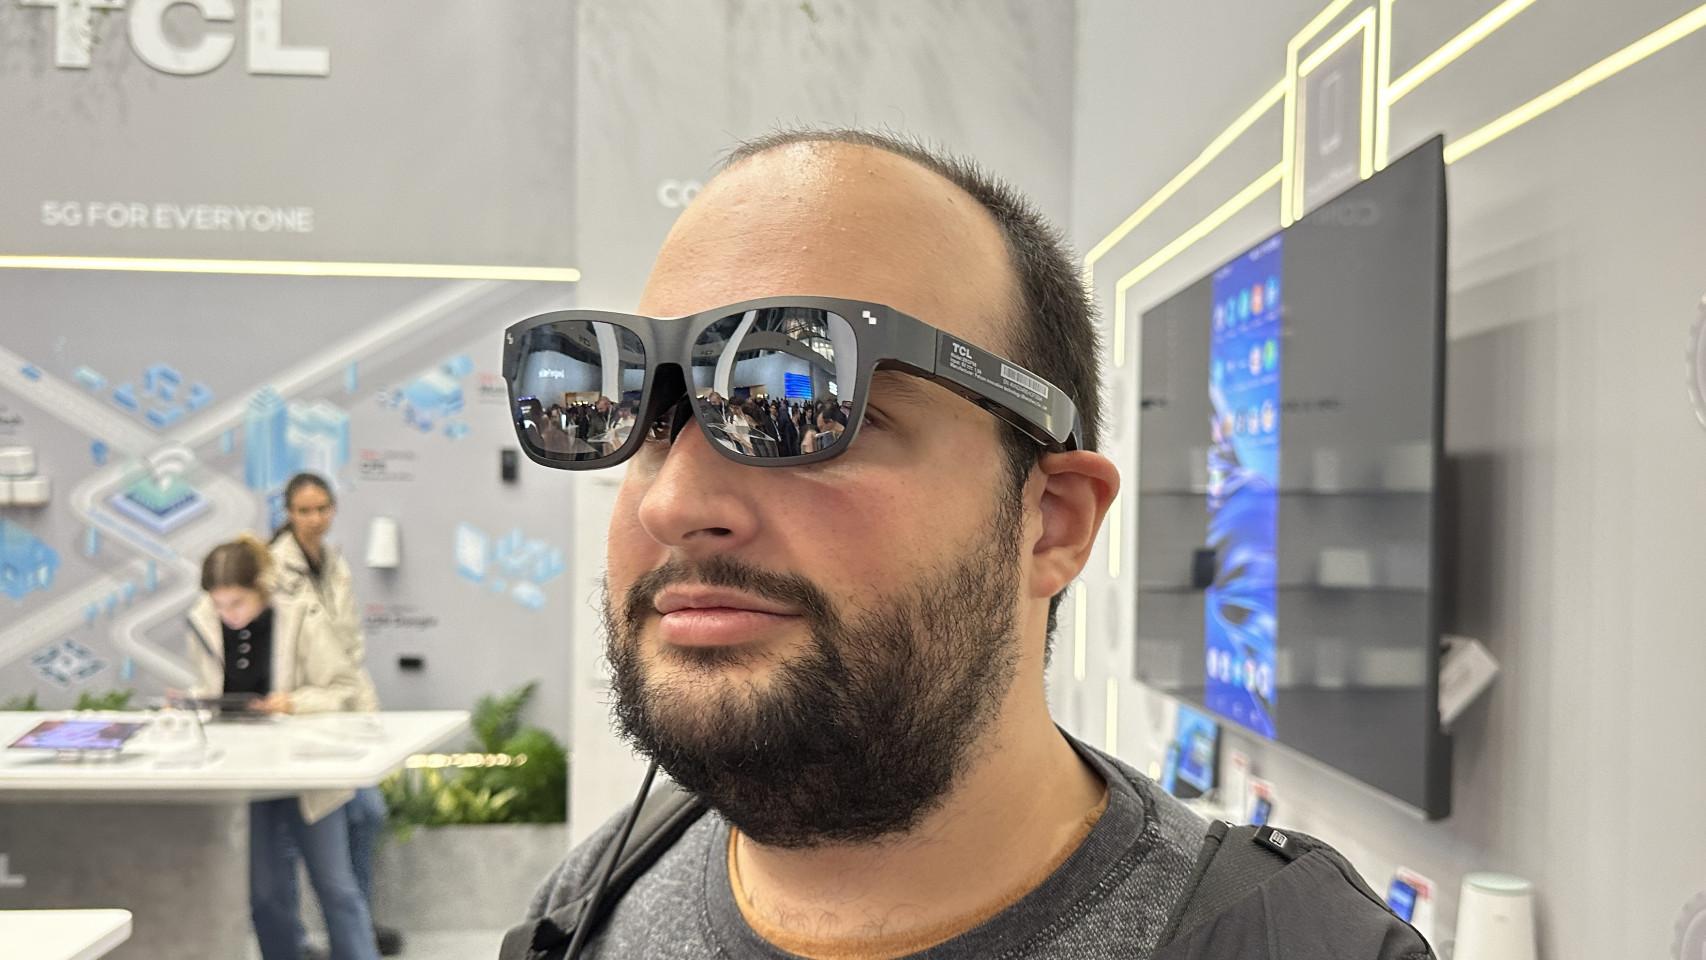 Llegarán las gafas de realidad aumentada a sustituir a los móviles?